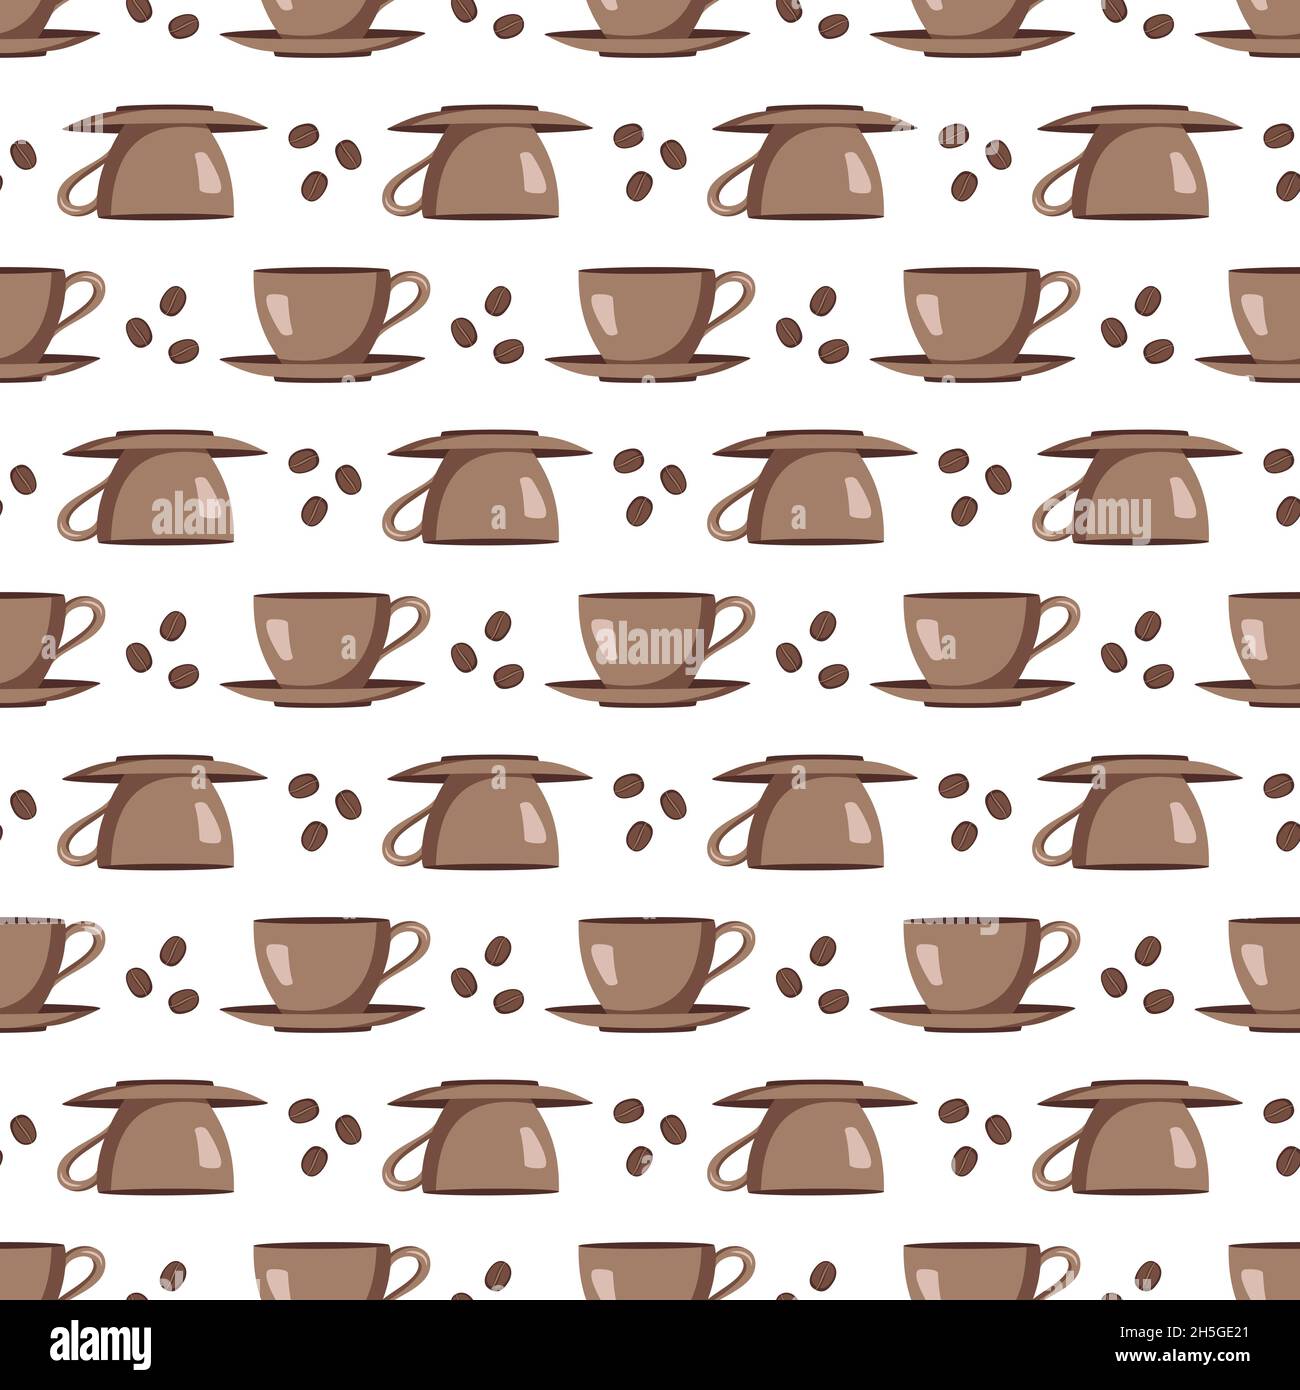 Maqueta de taza de café para llevar con granos de café